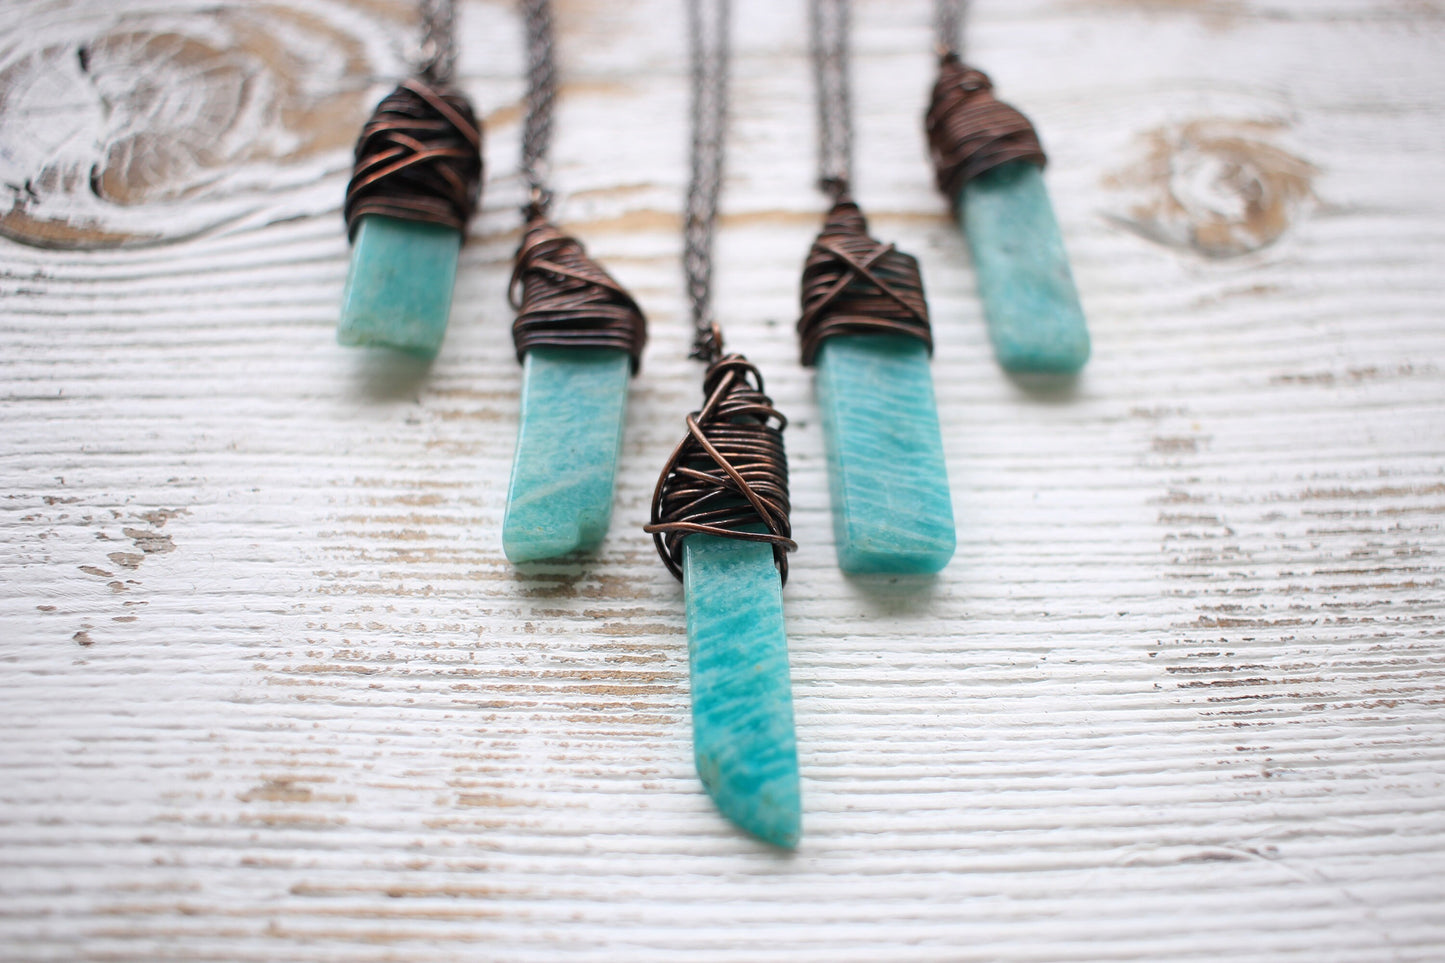 Amazonite Necklace - Aqua Crystal Necklace -Polished Crystal Necklace- Healing Crystal - Peace, Communication, Balance